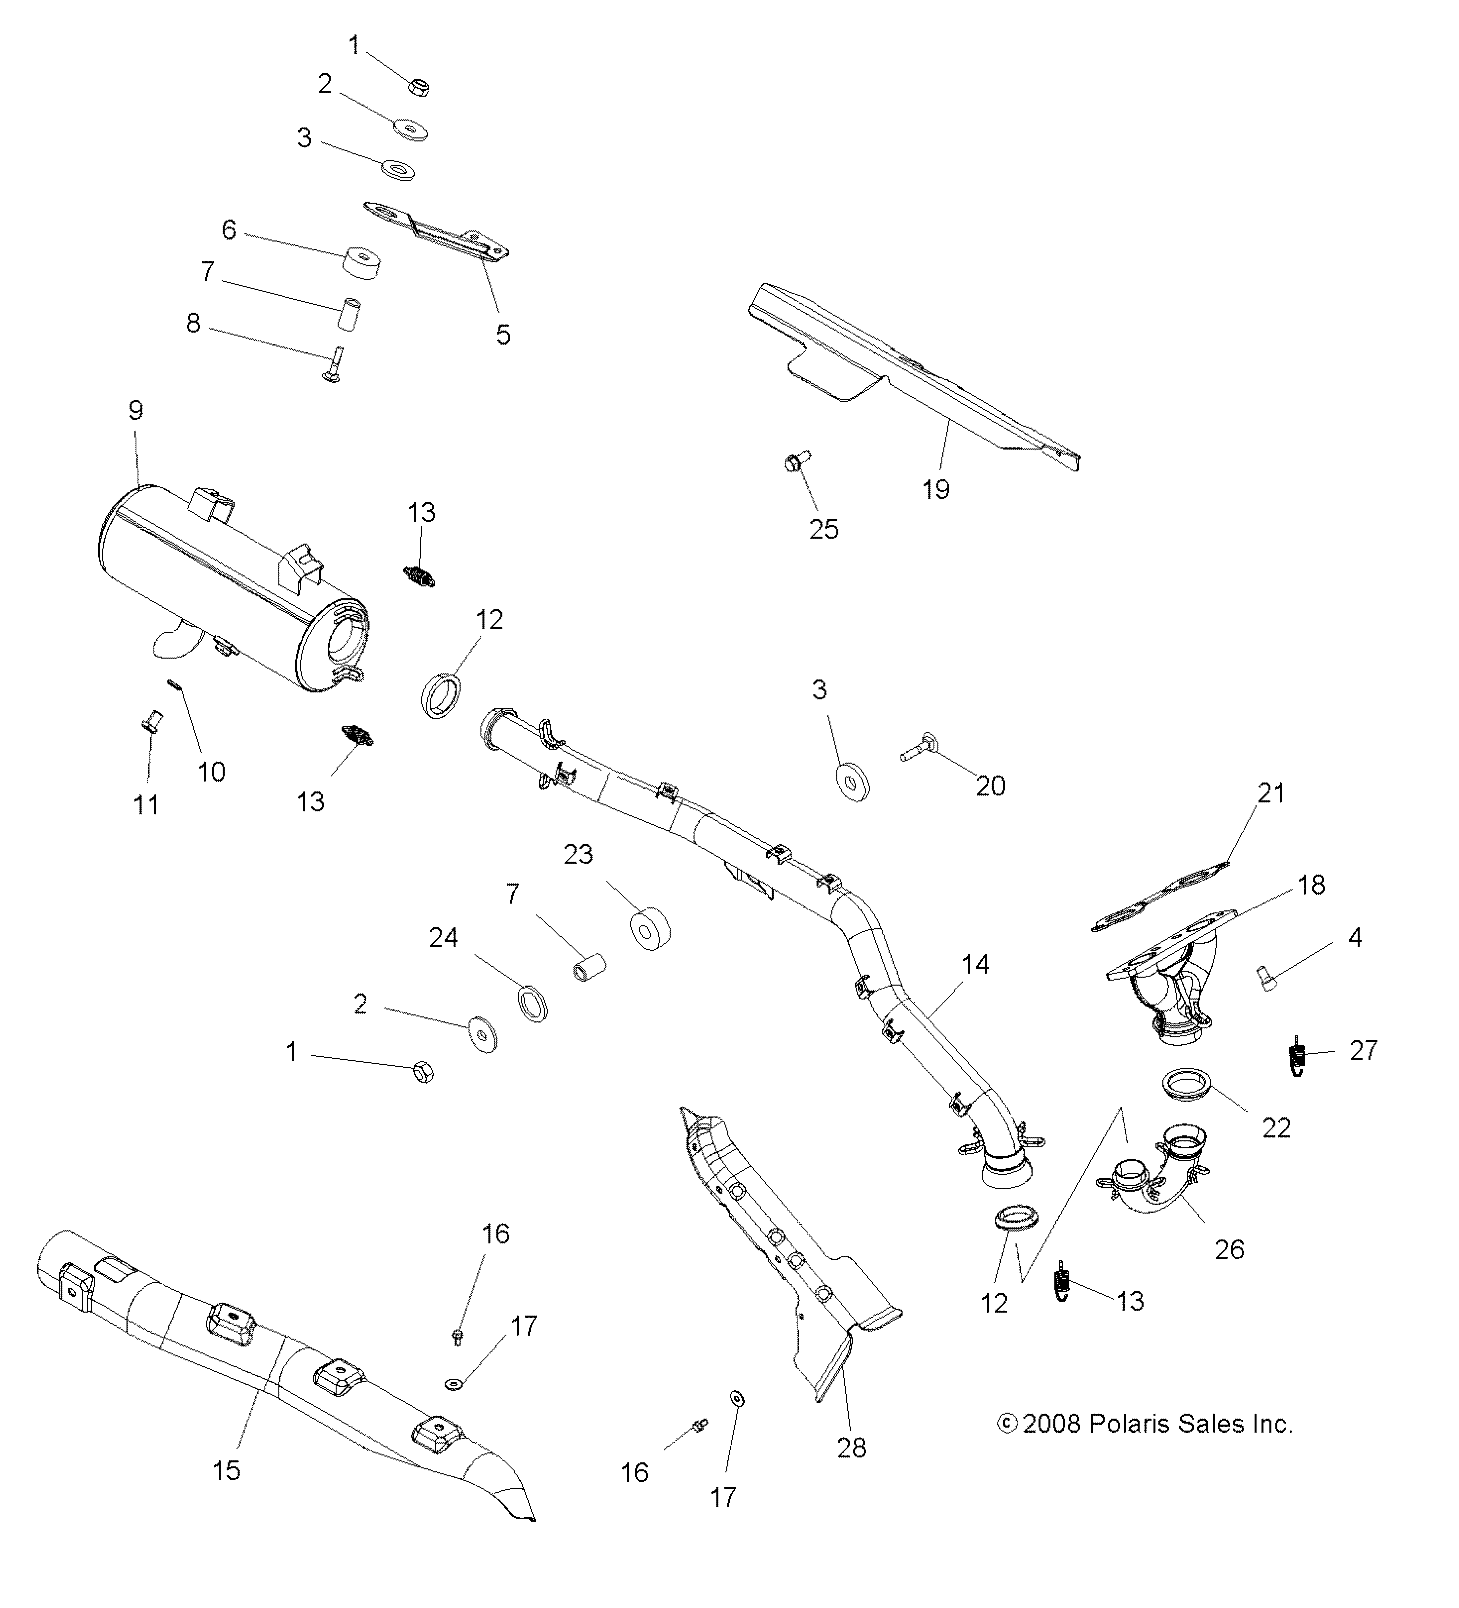 Foto diagrama Polaris que contem a peça 5251221